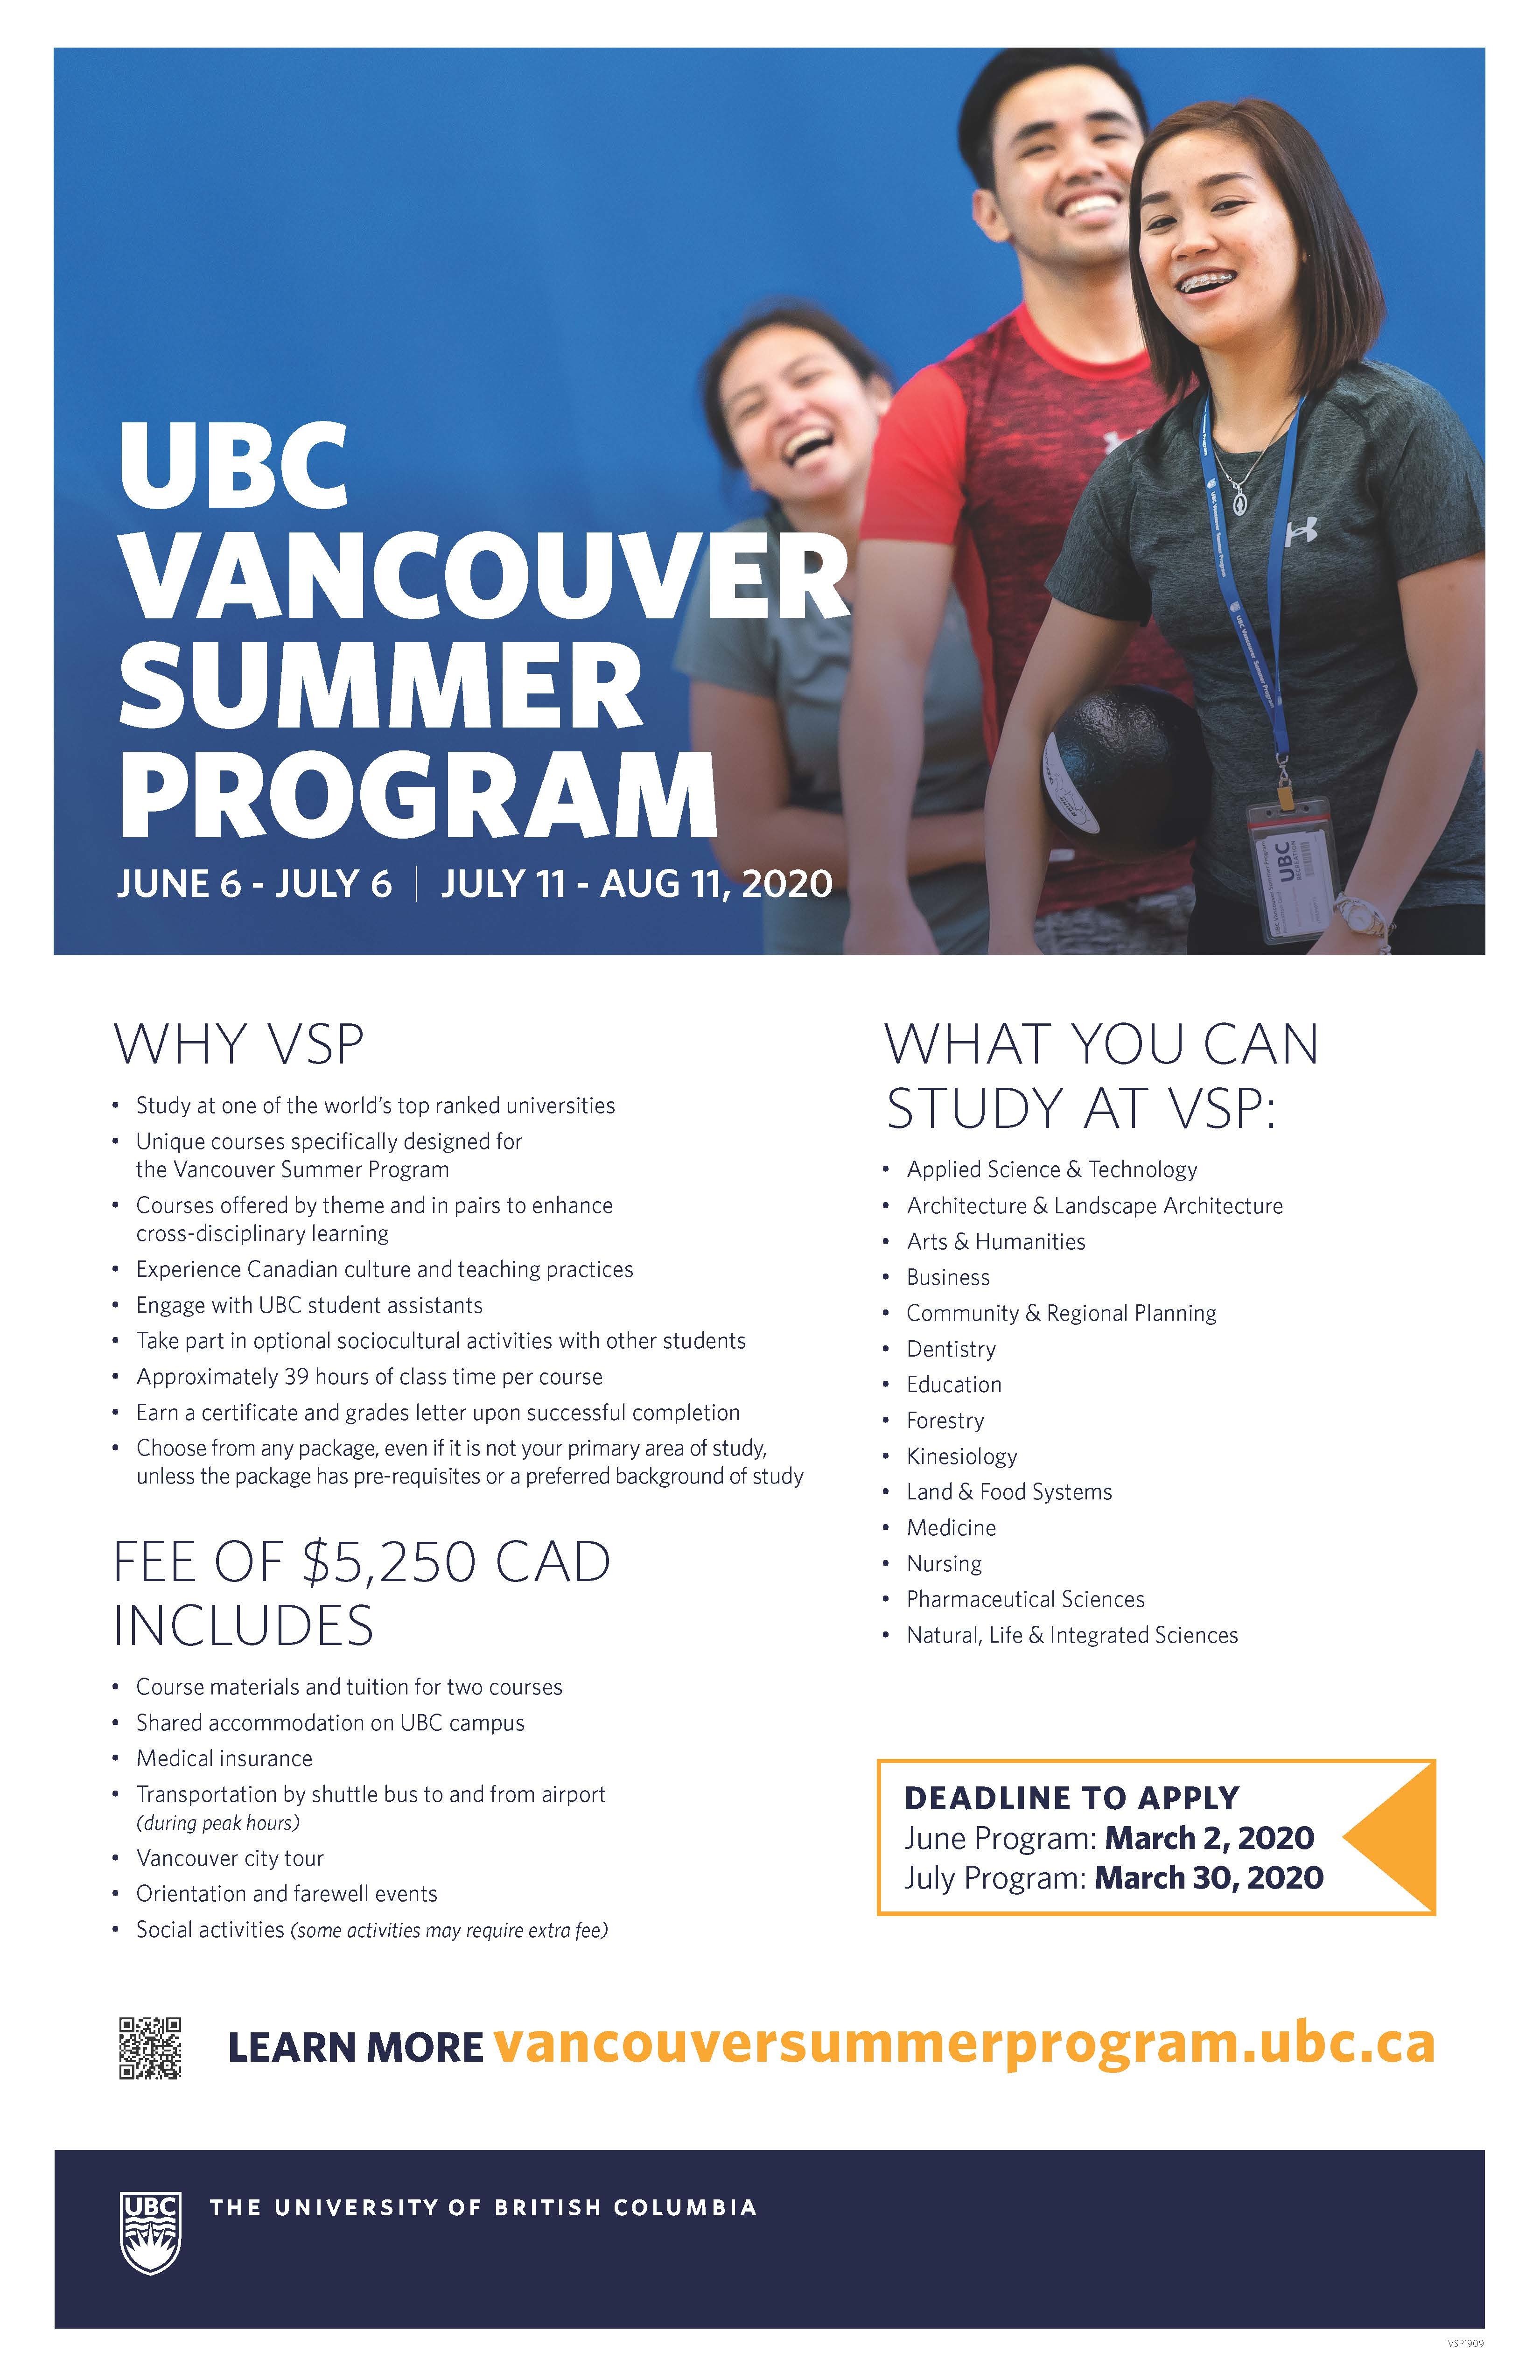 【轉知】UBC Vancouver Summer Program 2020 加拿大哥倫比亞大學 cancelled due to COVID